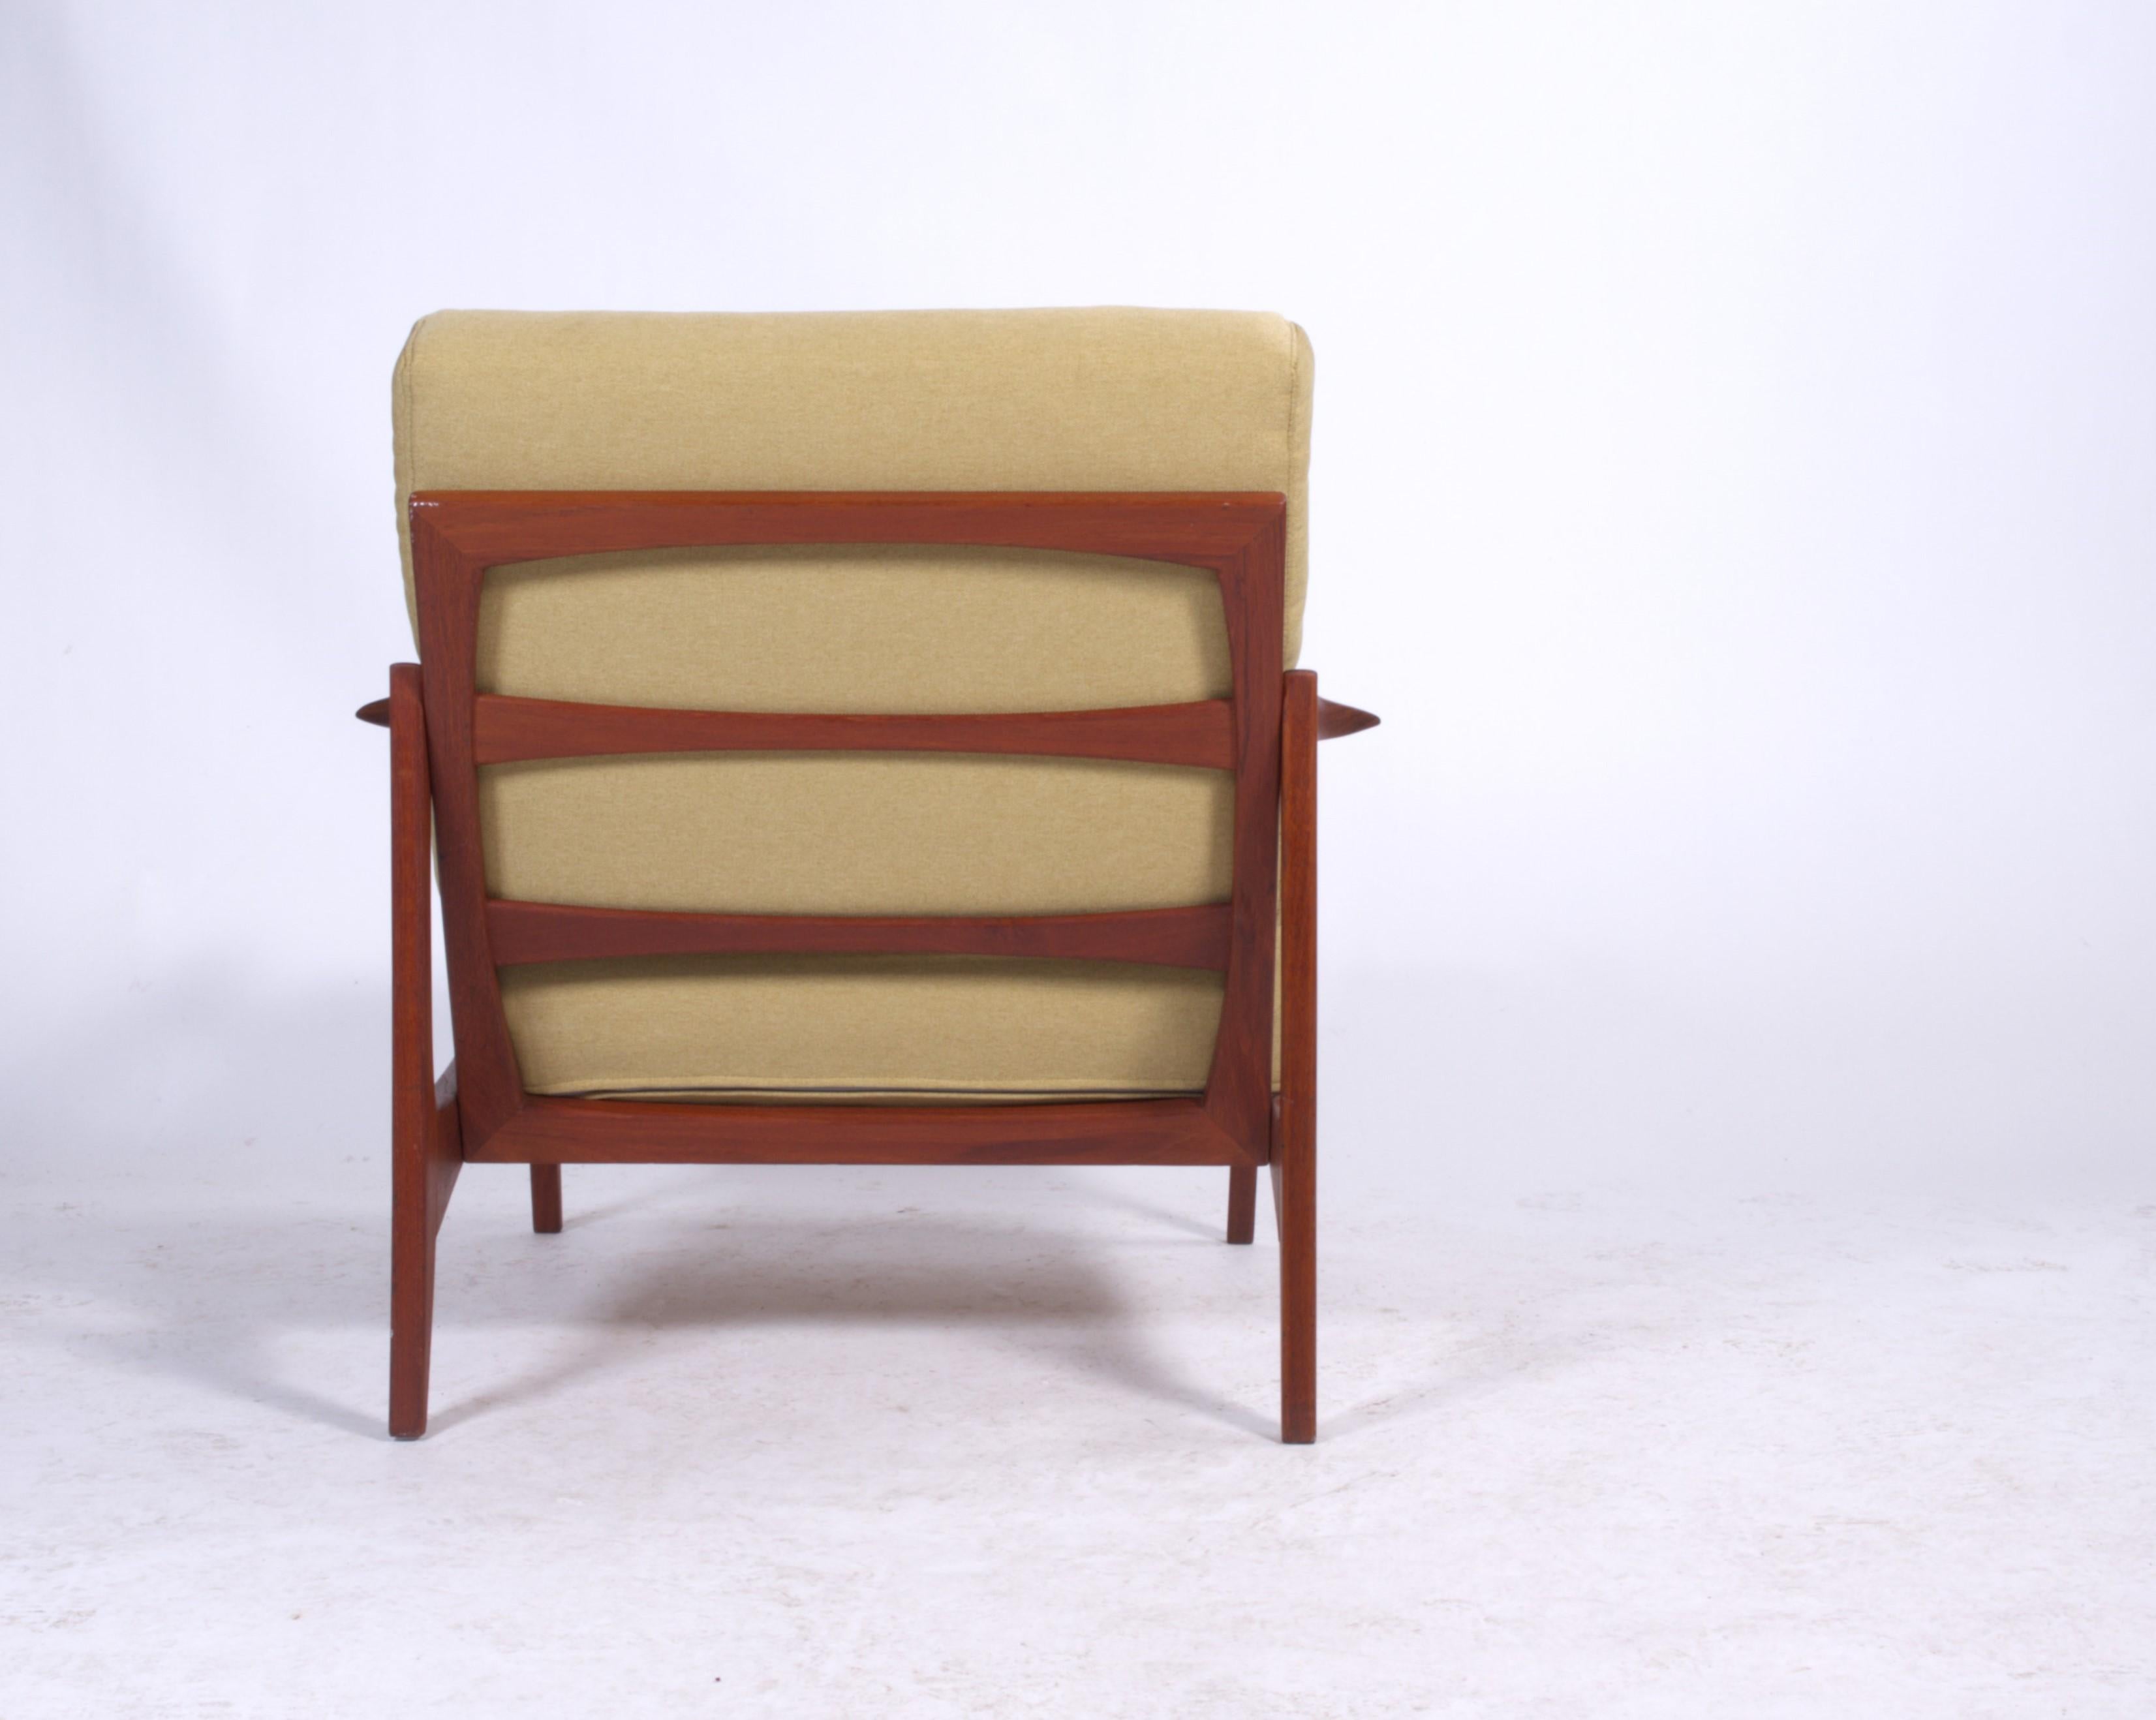 German Knoll Antimott Easy Chair 1950s-1960s Teak